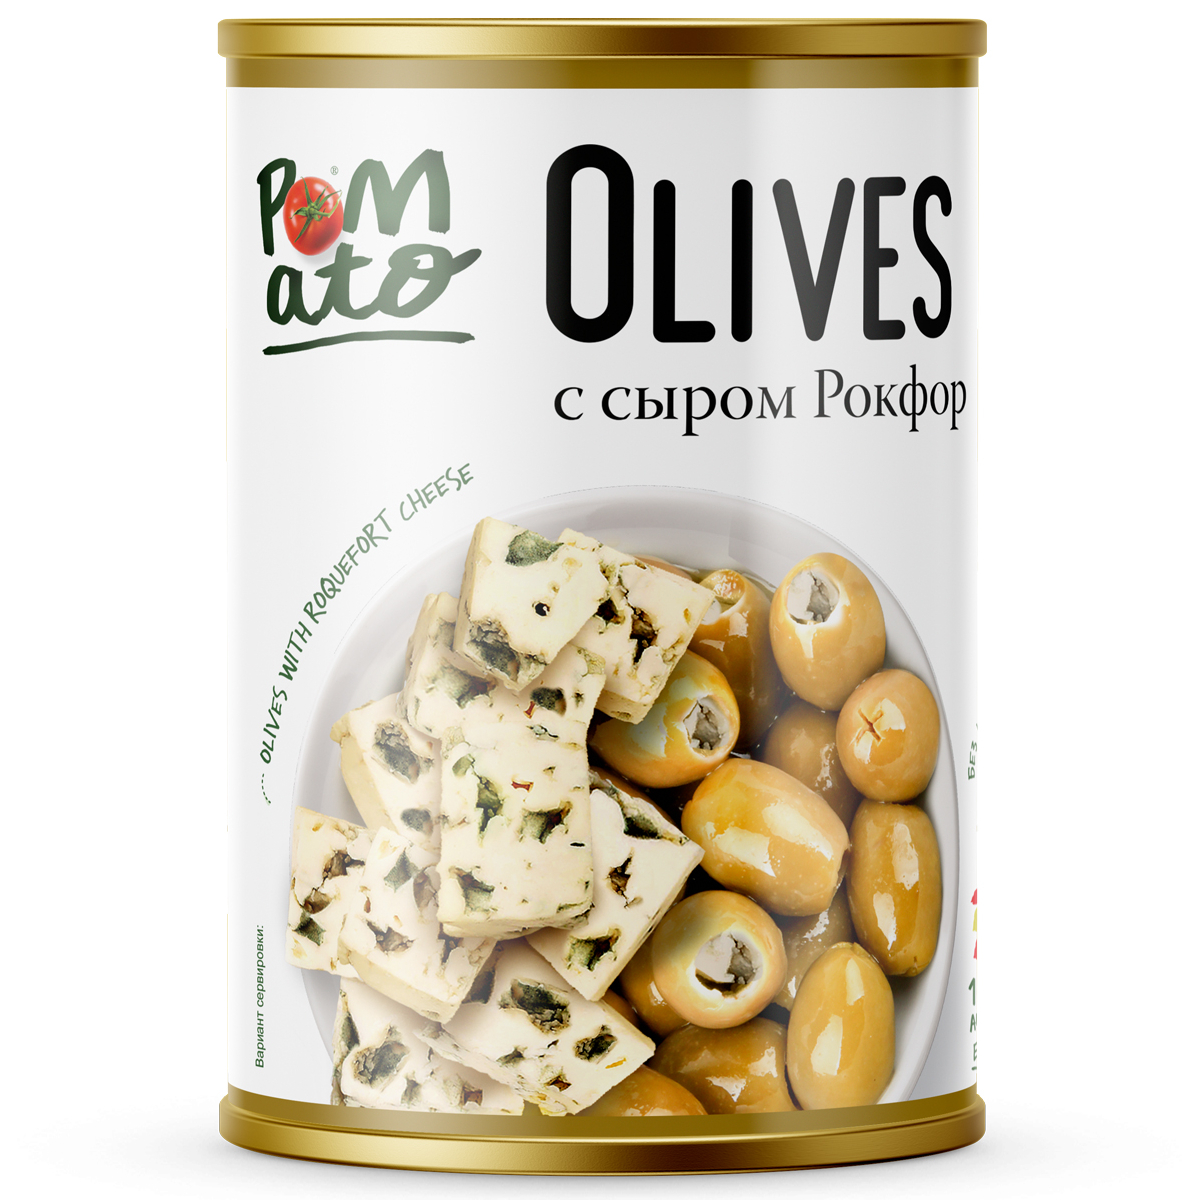 Оливки Pomato с сыром рокфор, 300 г оливки bonduelle мансанилья с голубым сыром 300 г